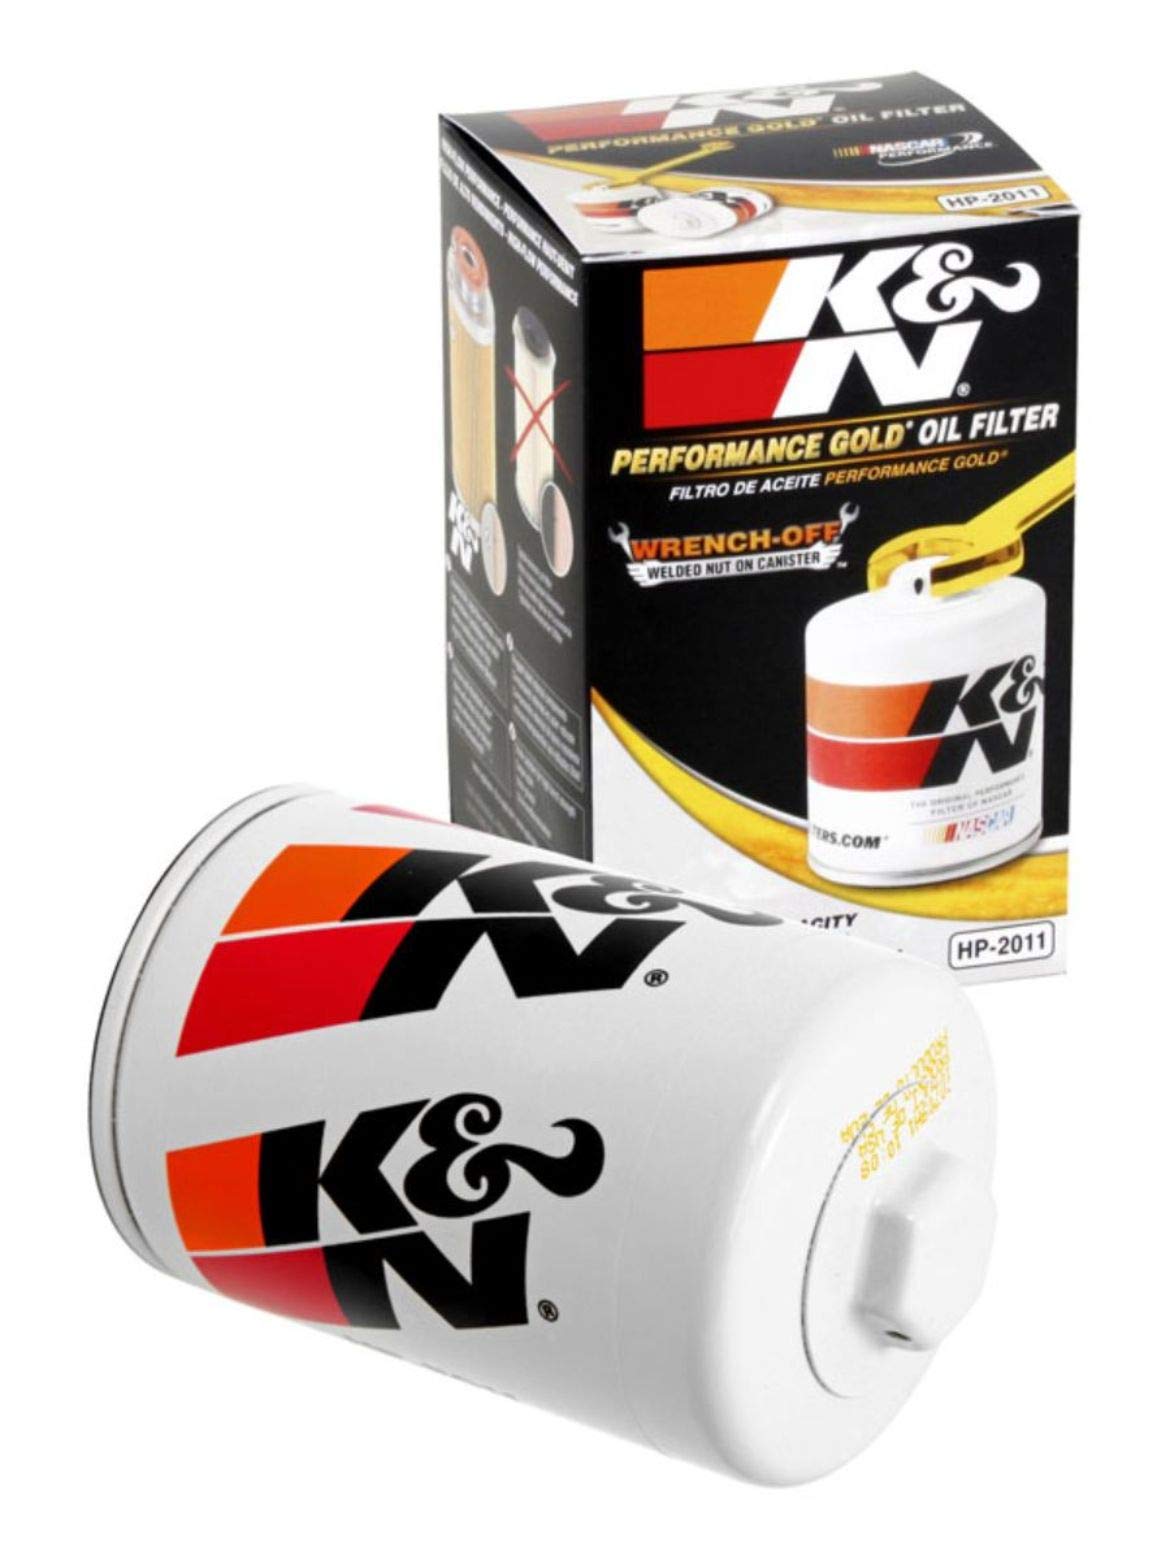 K&N Ölfilter - Patrone 76x121mm kompatibel mit Chevrolet, Ford, GMC, Buick, Lincoln, (HP-2011), Oil Filter-1 Pack Weiß von K&N